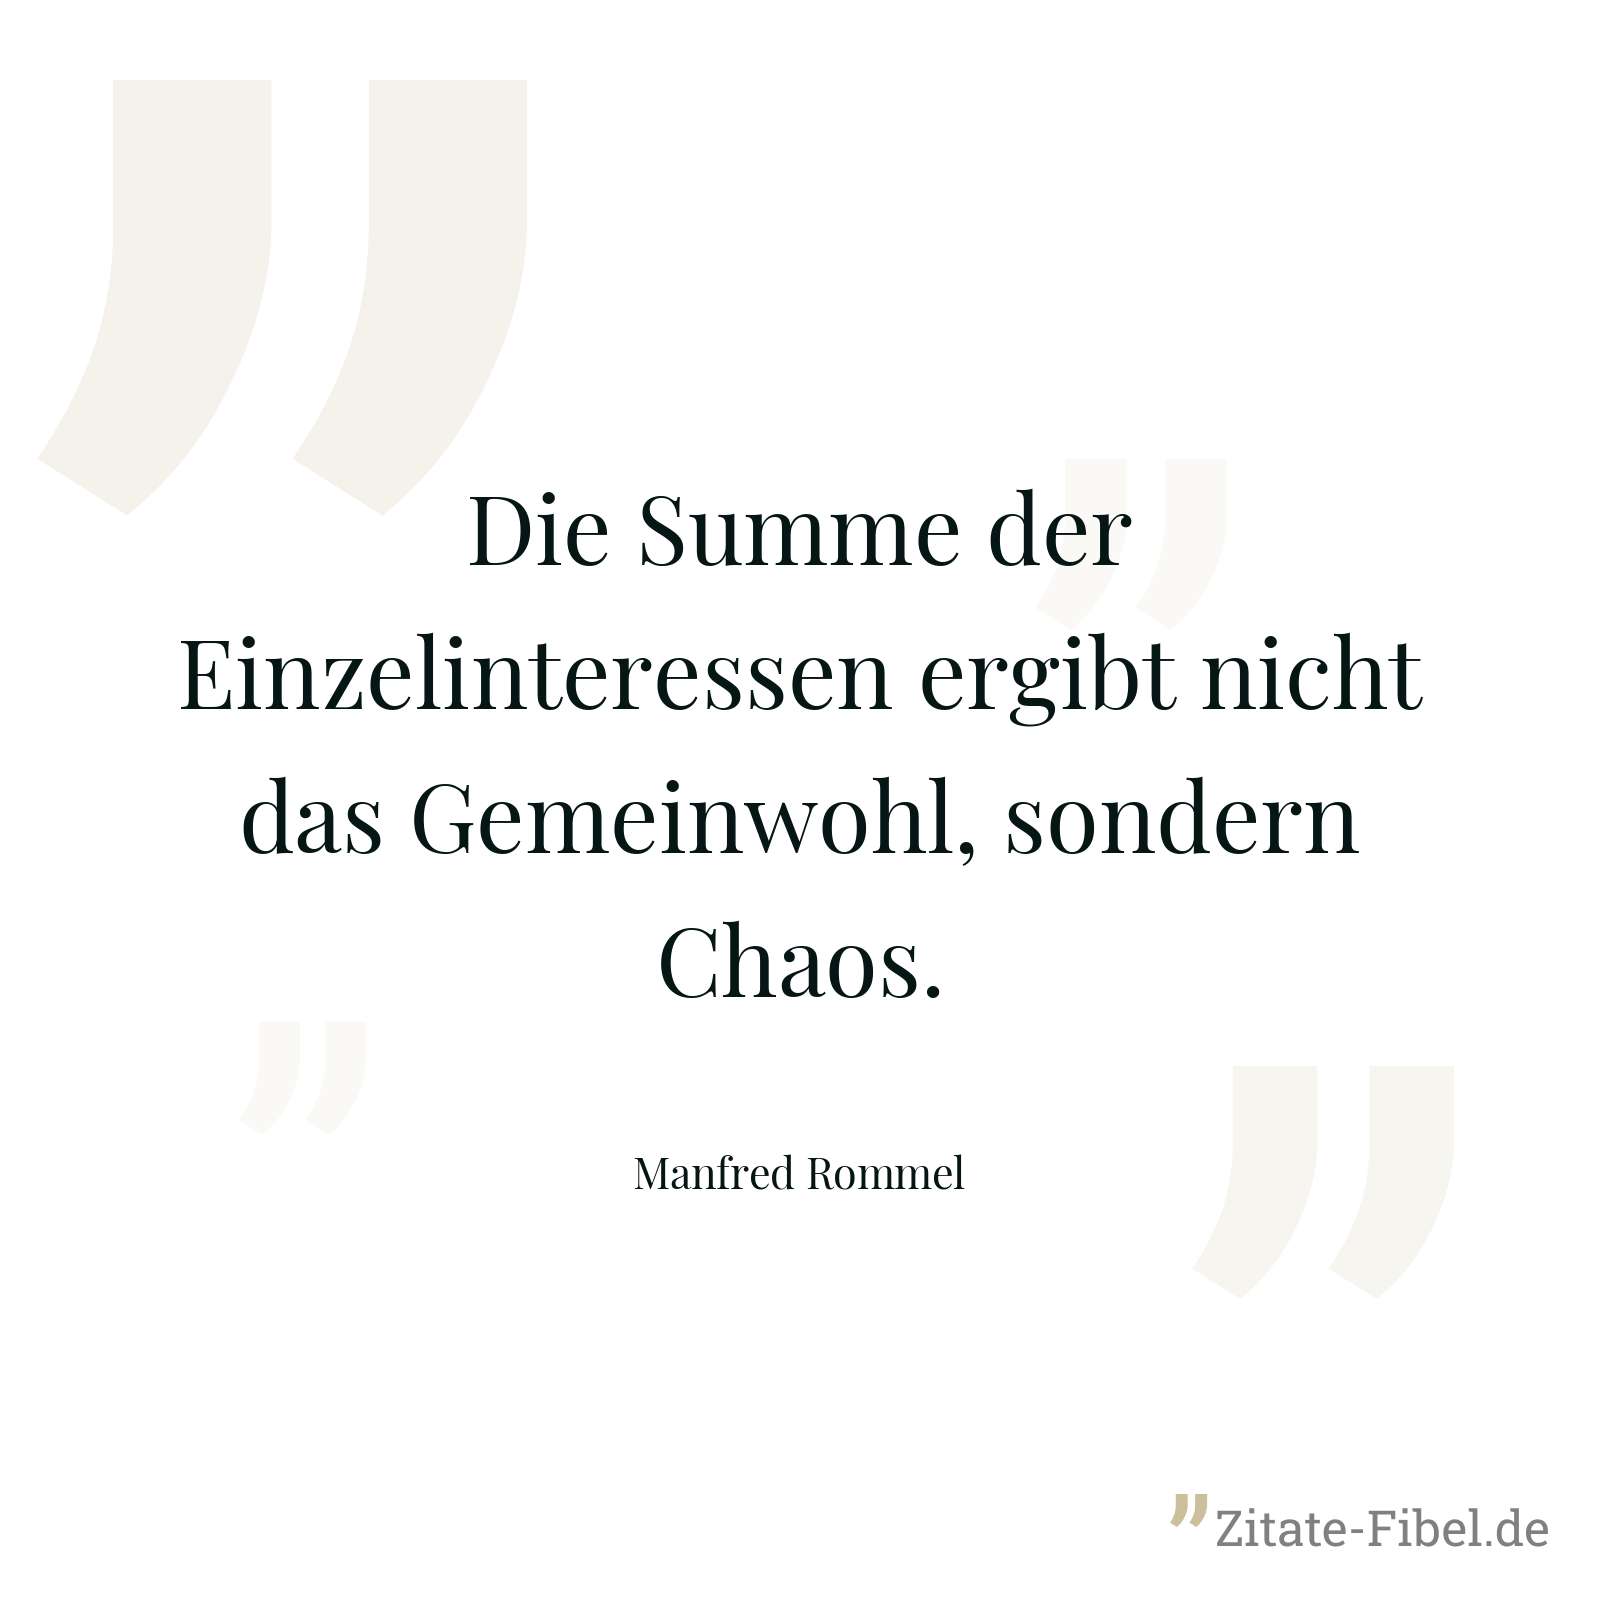 Die Summe der Einzelinteressen ergibt nicht das Gemeinwohl, sondern Chaos. - Manfred Rommel